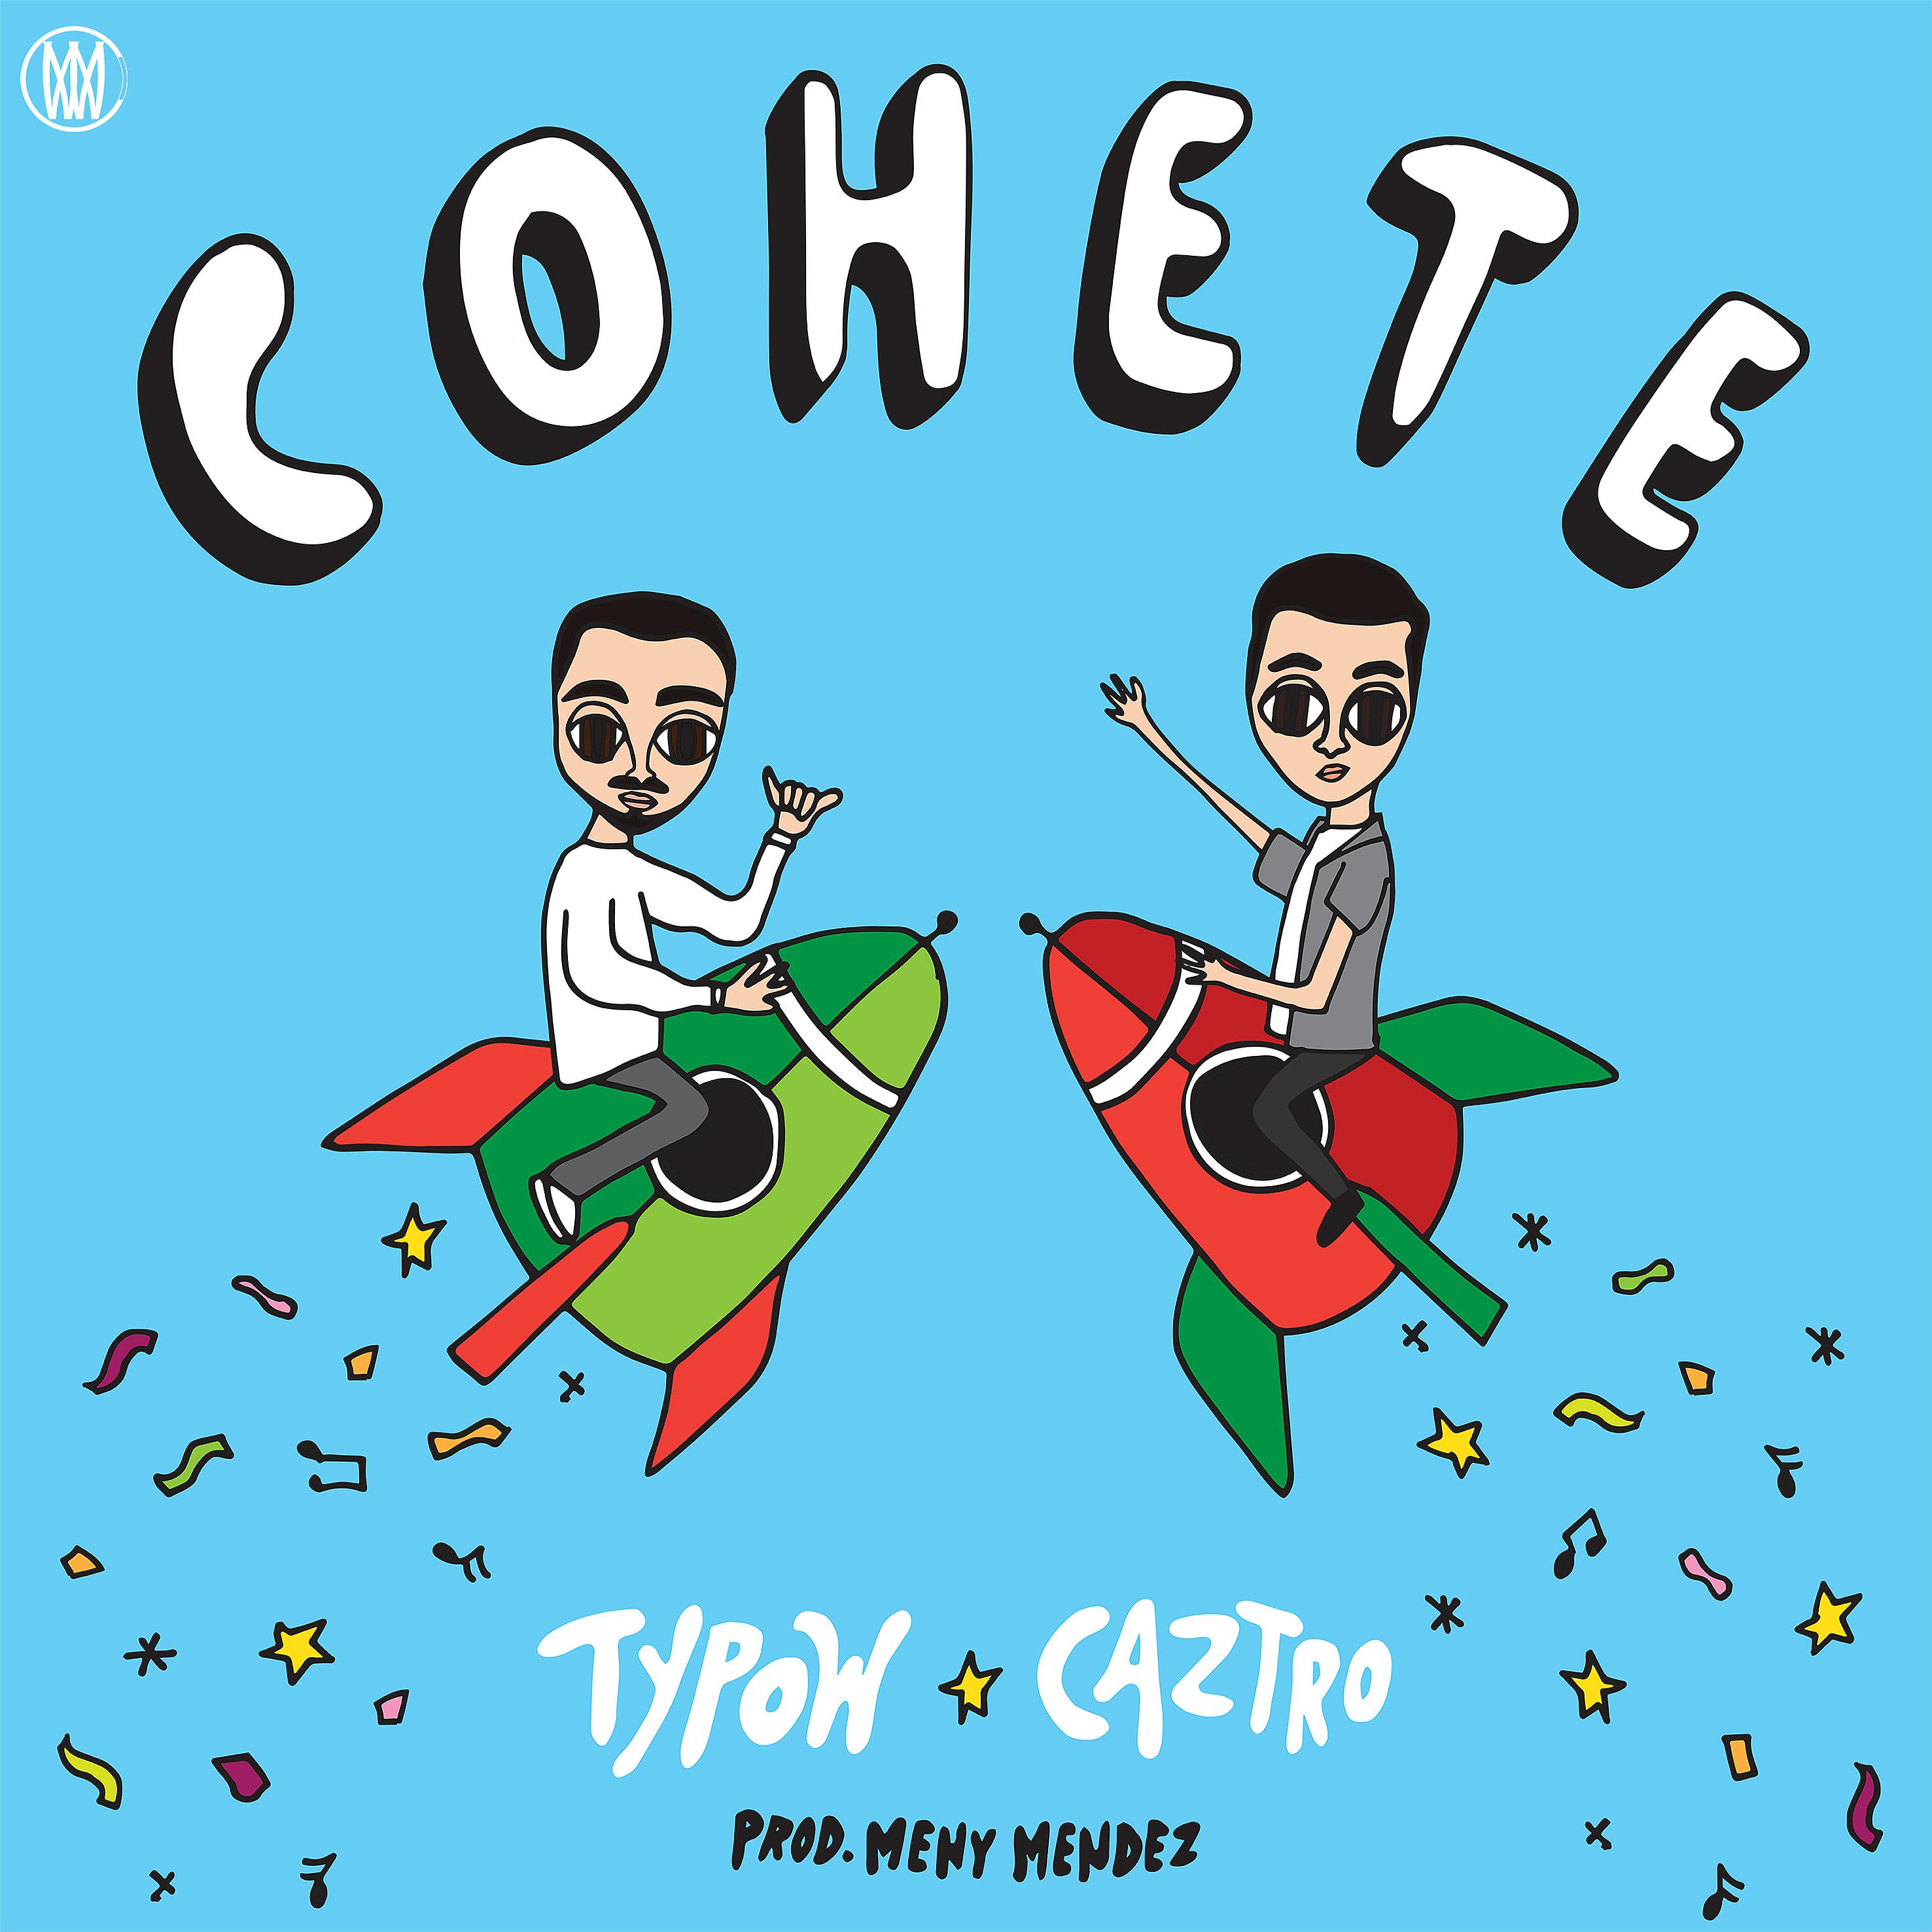 Постер альбома Cohete